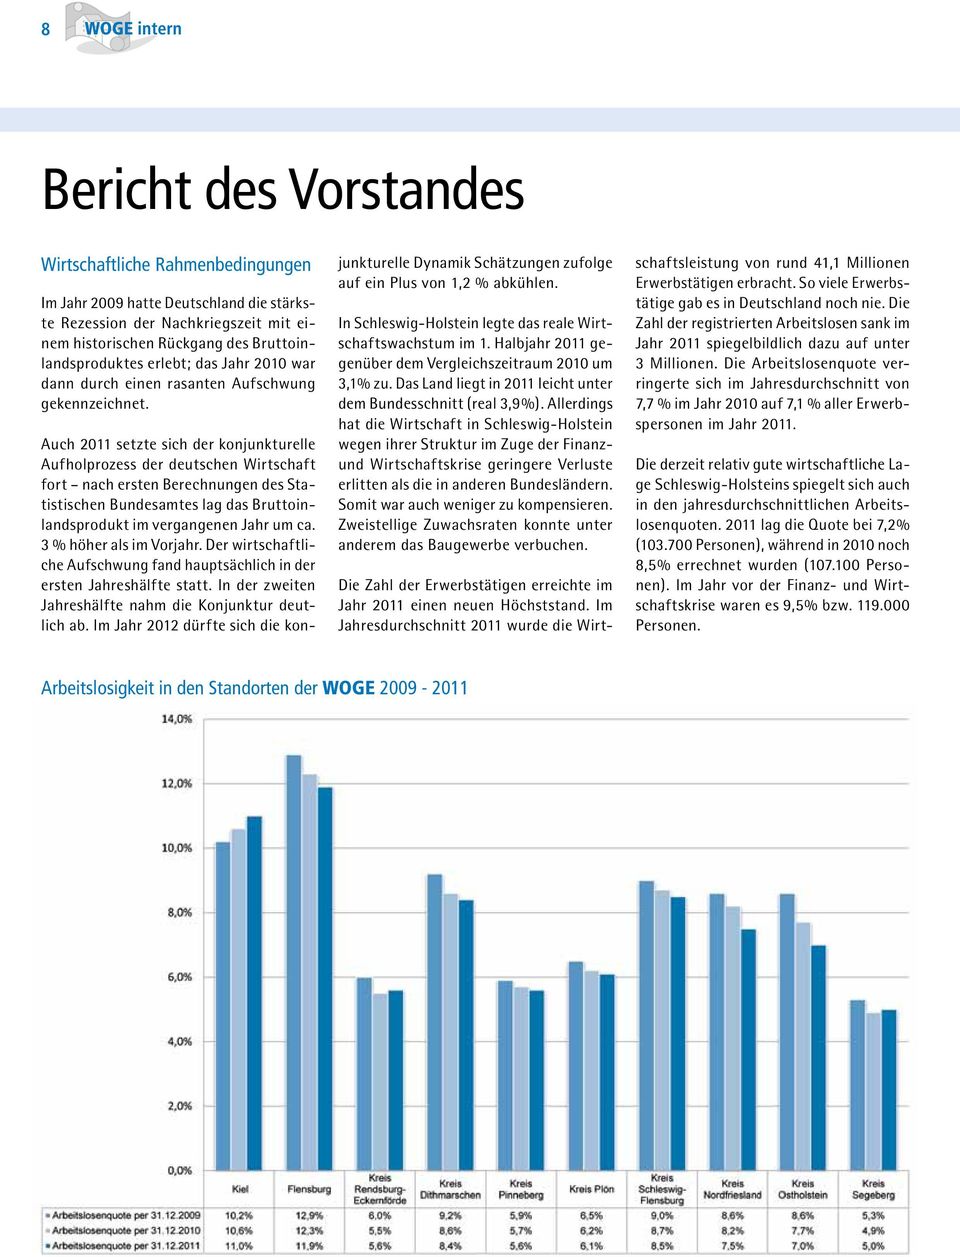 Auch 2011 setzte sich der konjunkturelle Aufholprozess der deutschen Wirtschaft fort nach ersten Berechnungen des Statistischen Bundesamtes lag das Bruttoinlandsprodukt im vergangenen Jahr um ca.